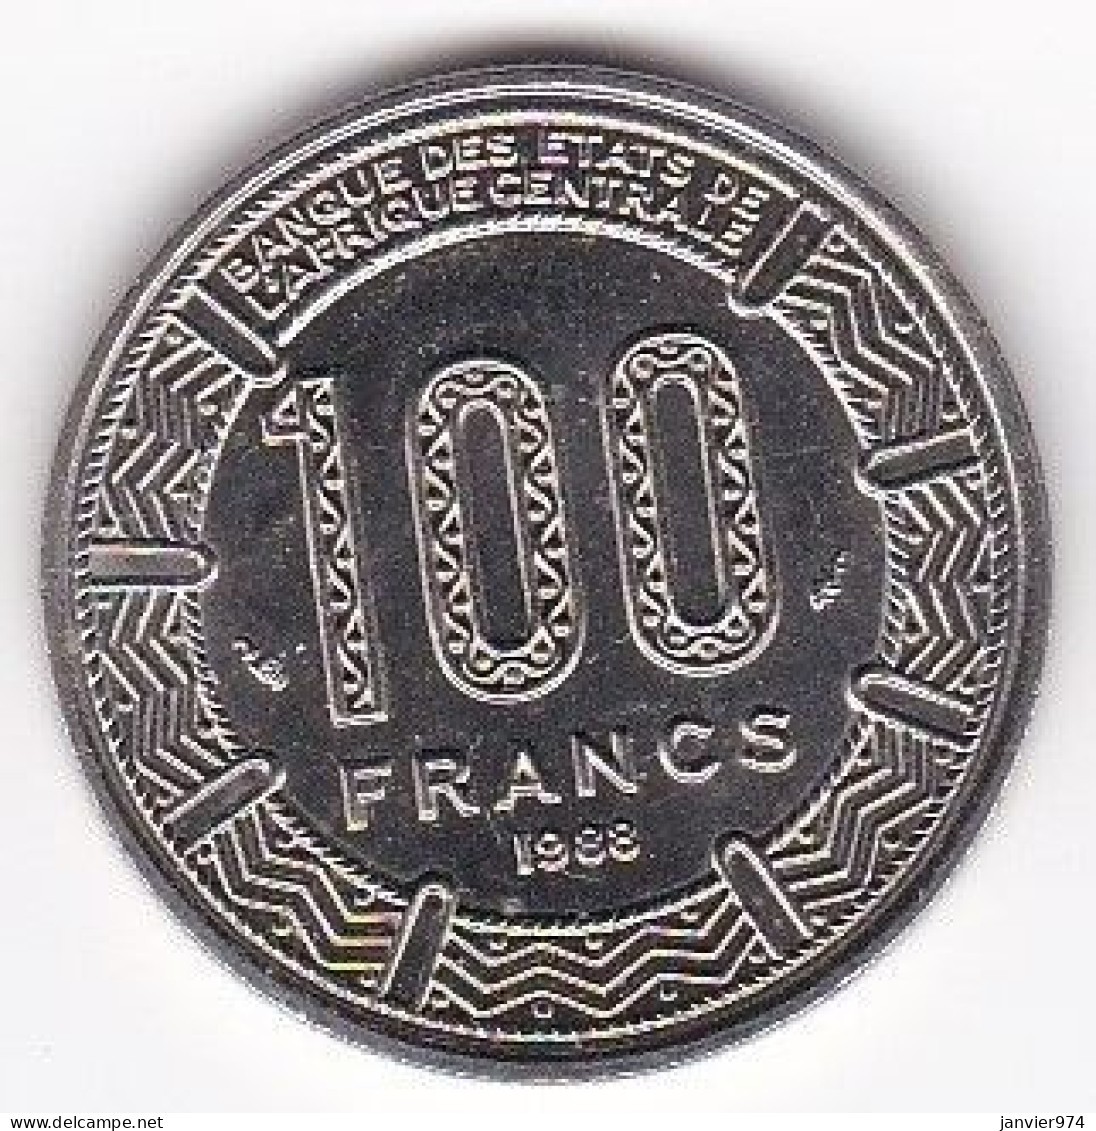 République Du Tchad 100 Francs 1988, En Nickel , KM# 3, UNC/ Neuve - Ciad